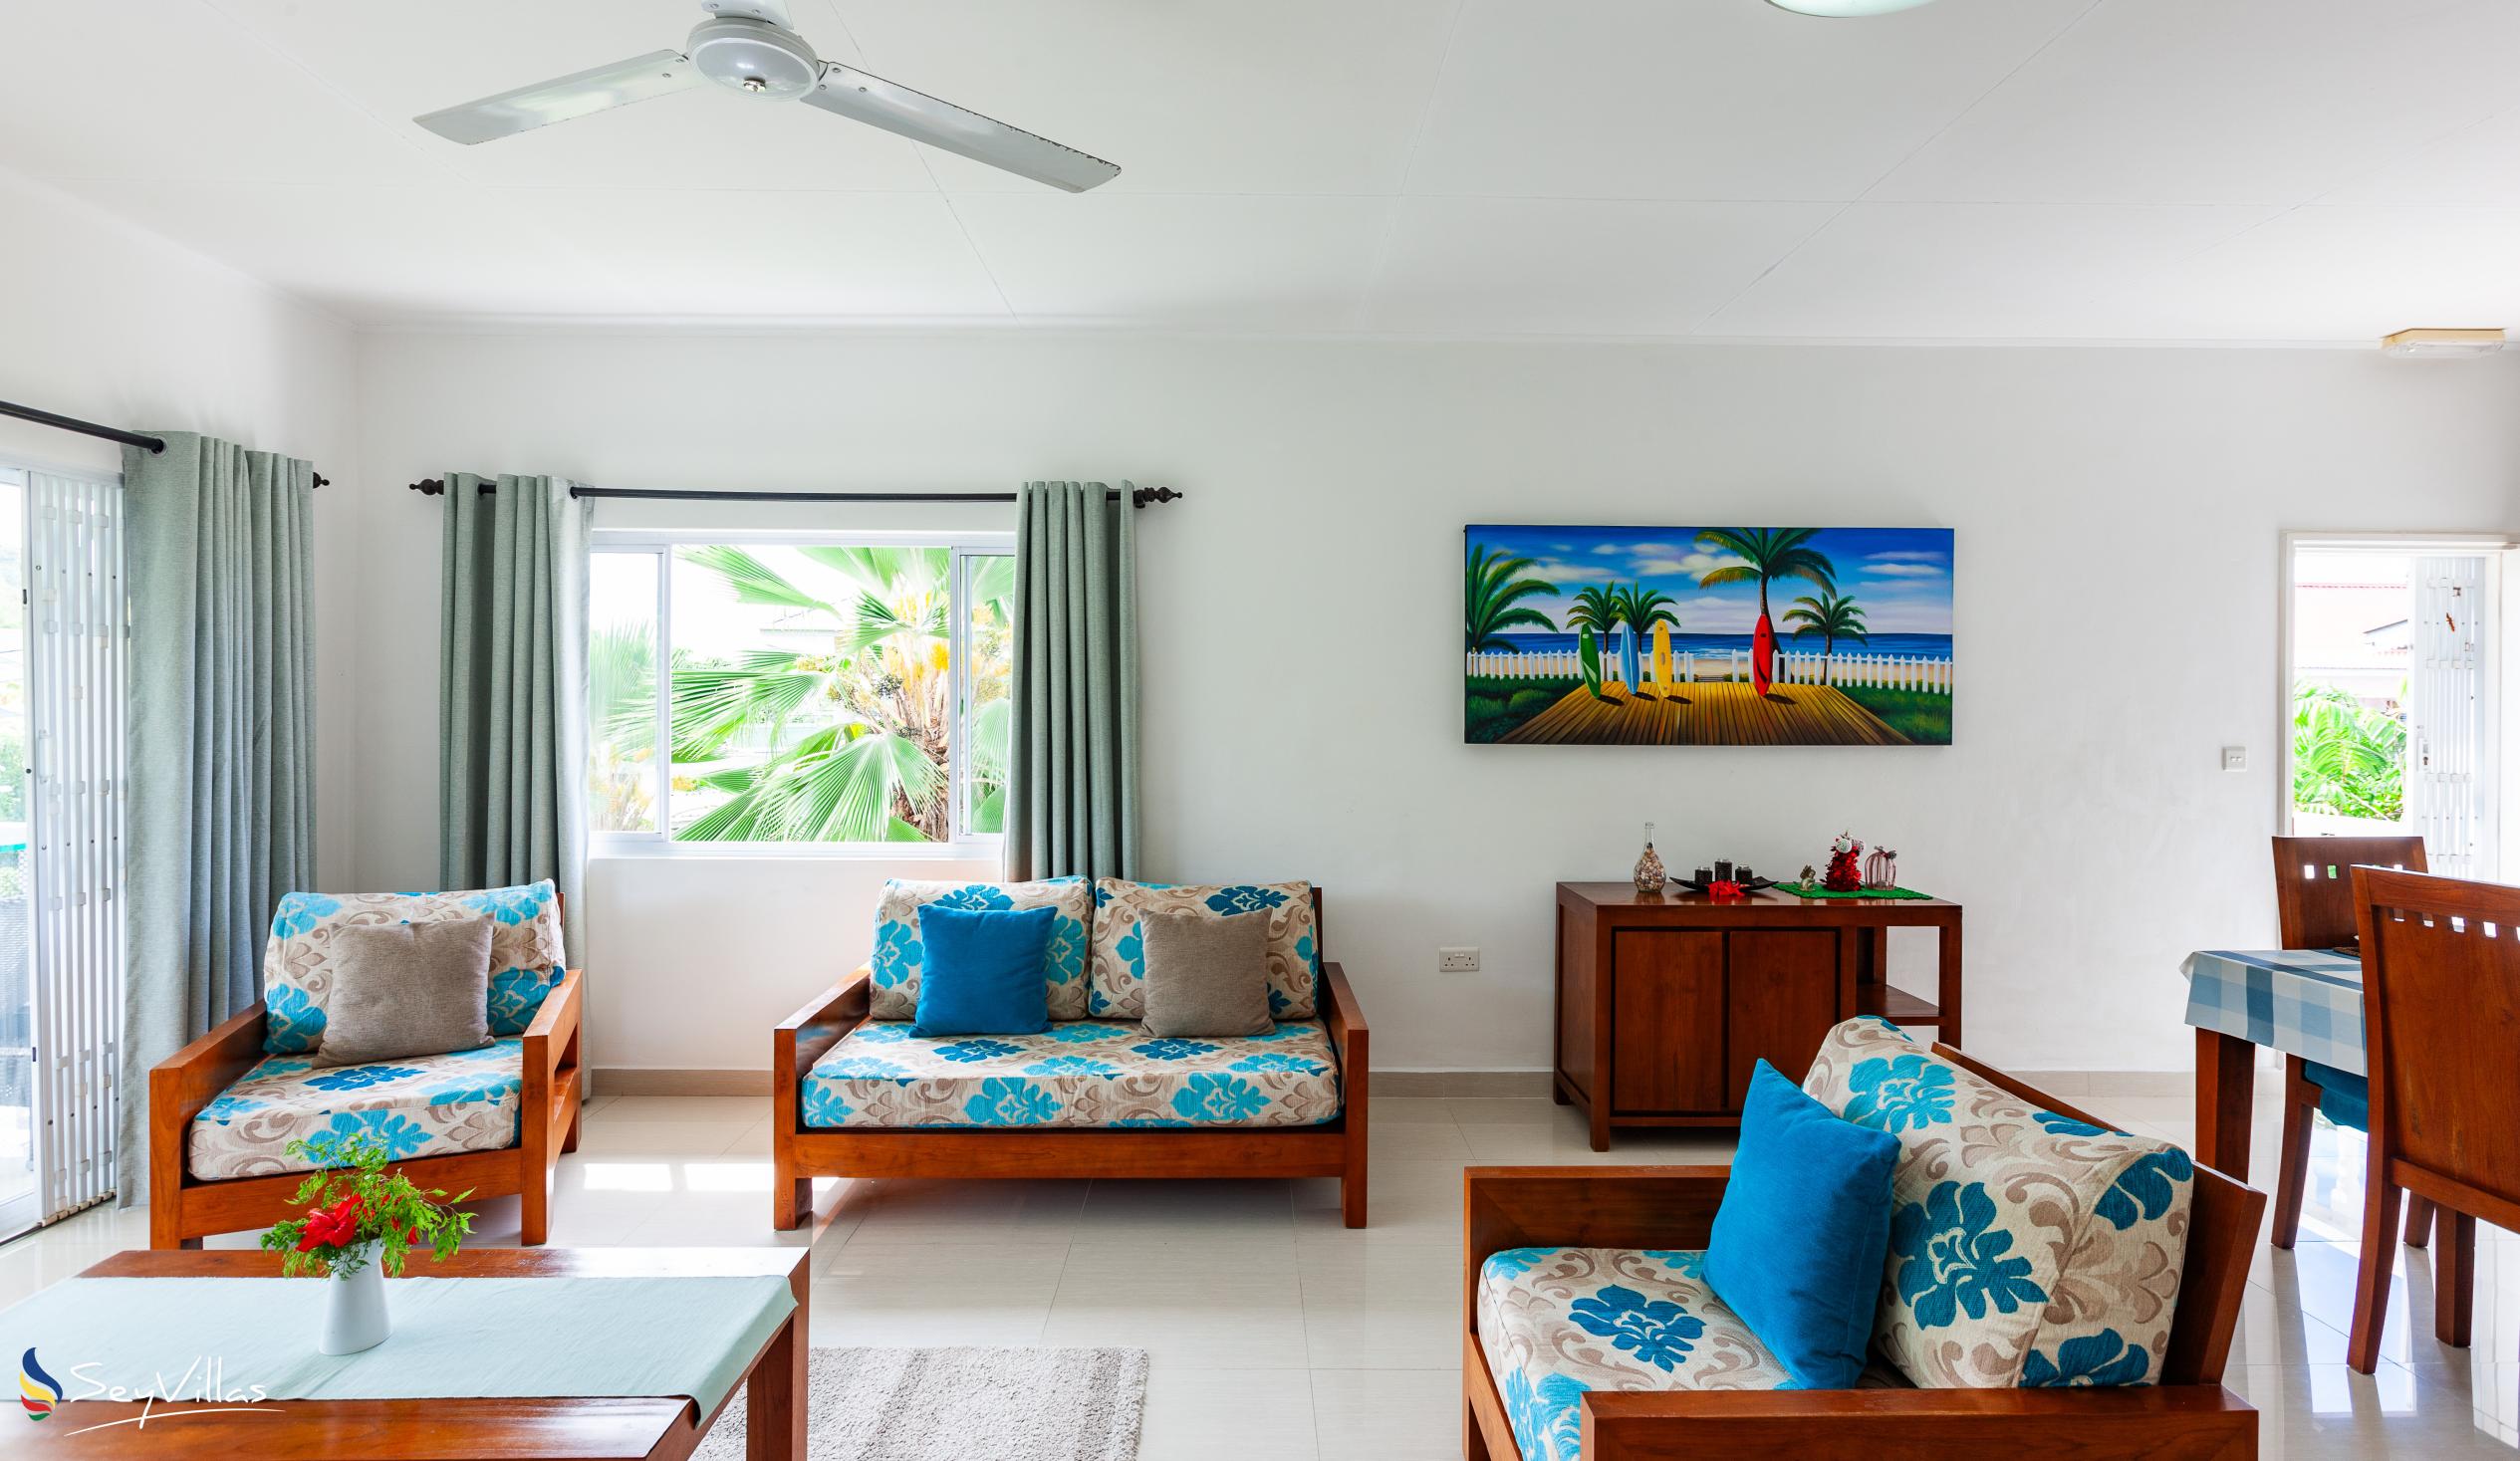 Photo 22: Casa Tara Villas - 2-Bedroom Apartment - Praslin (Seychelles)